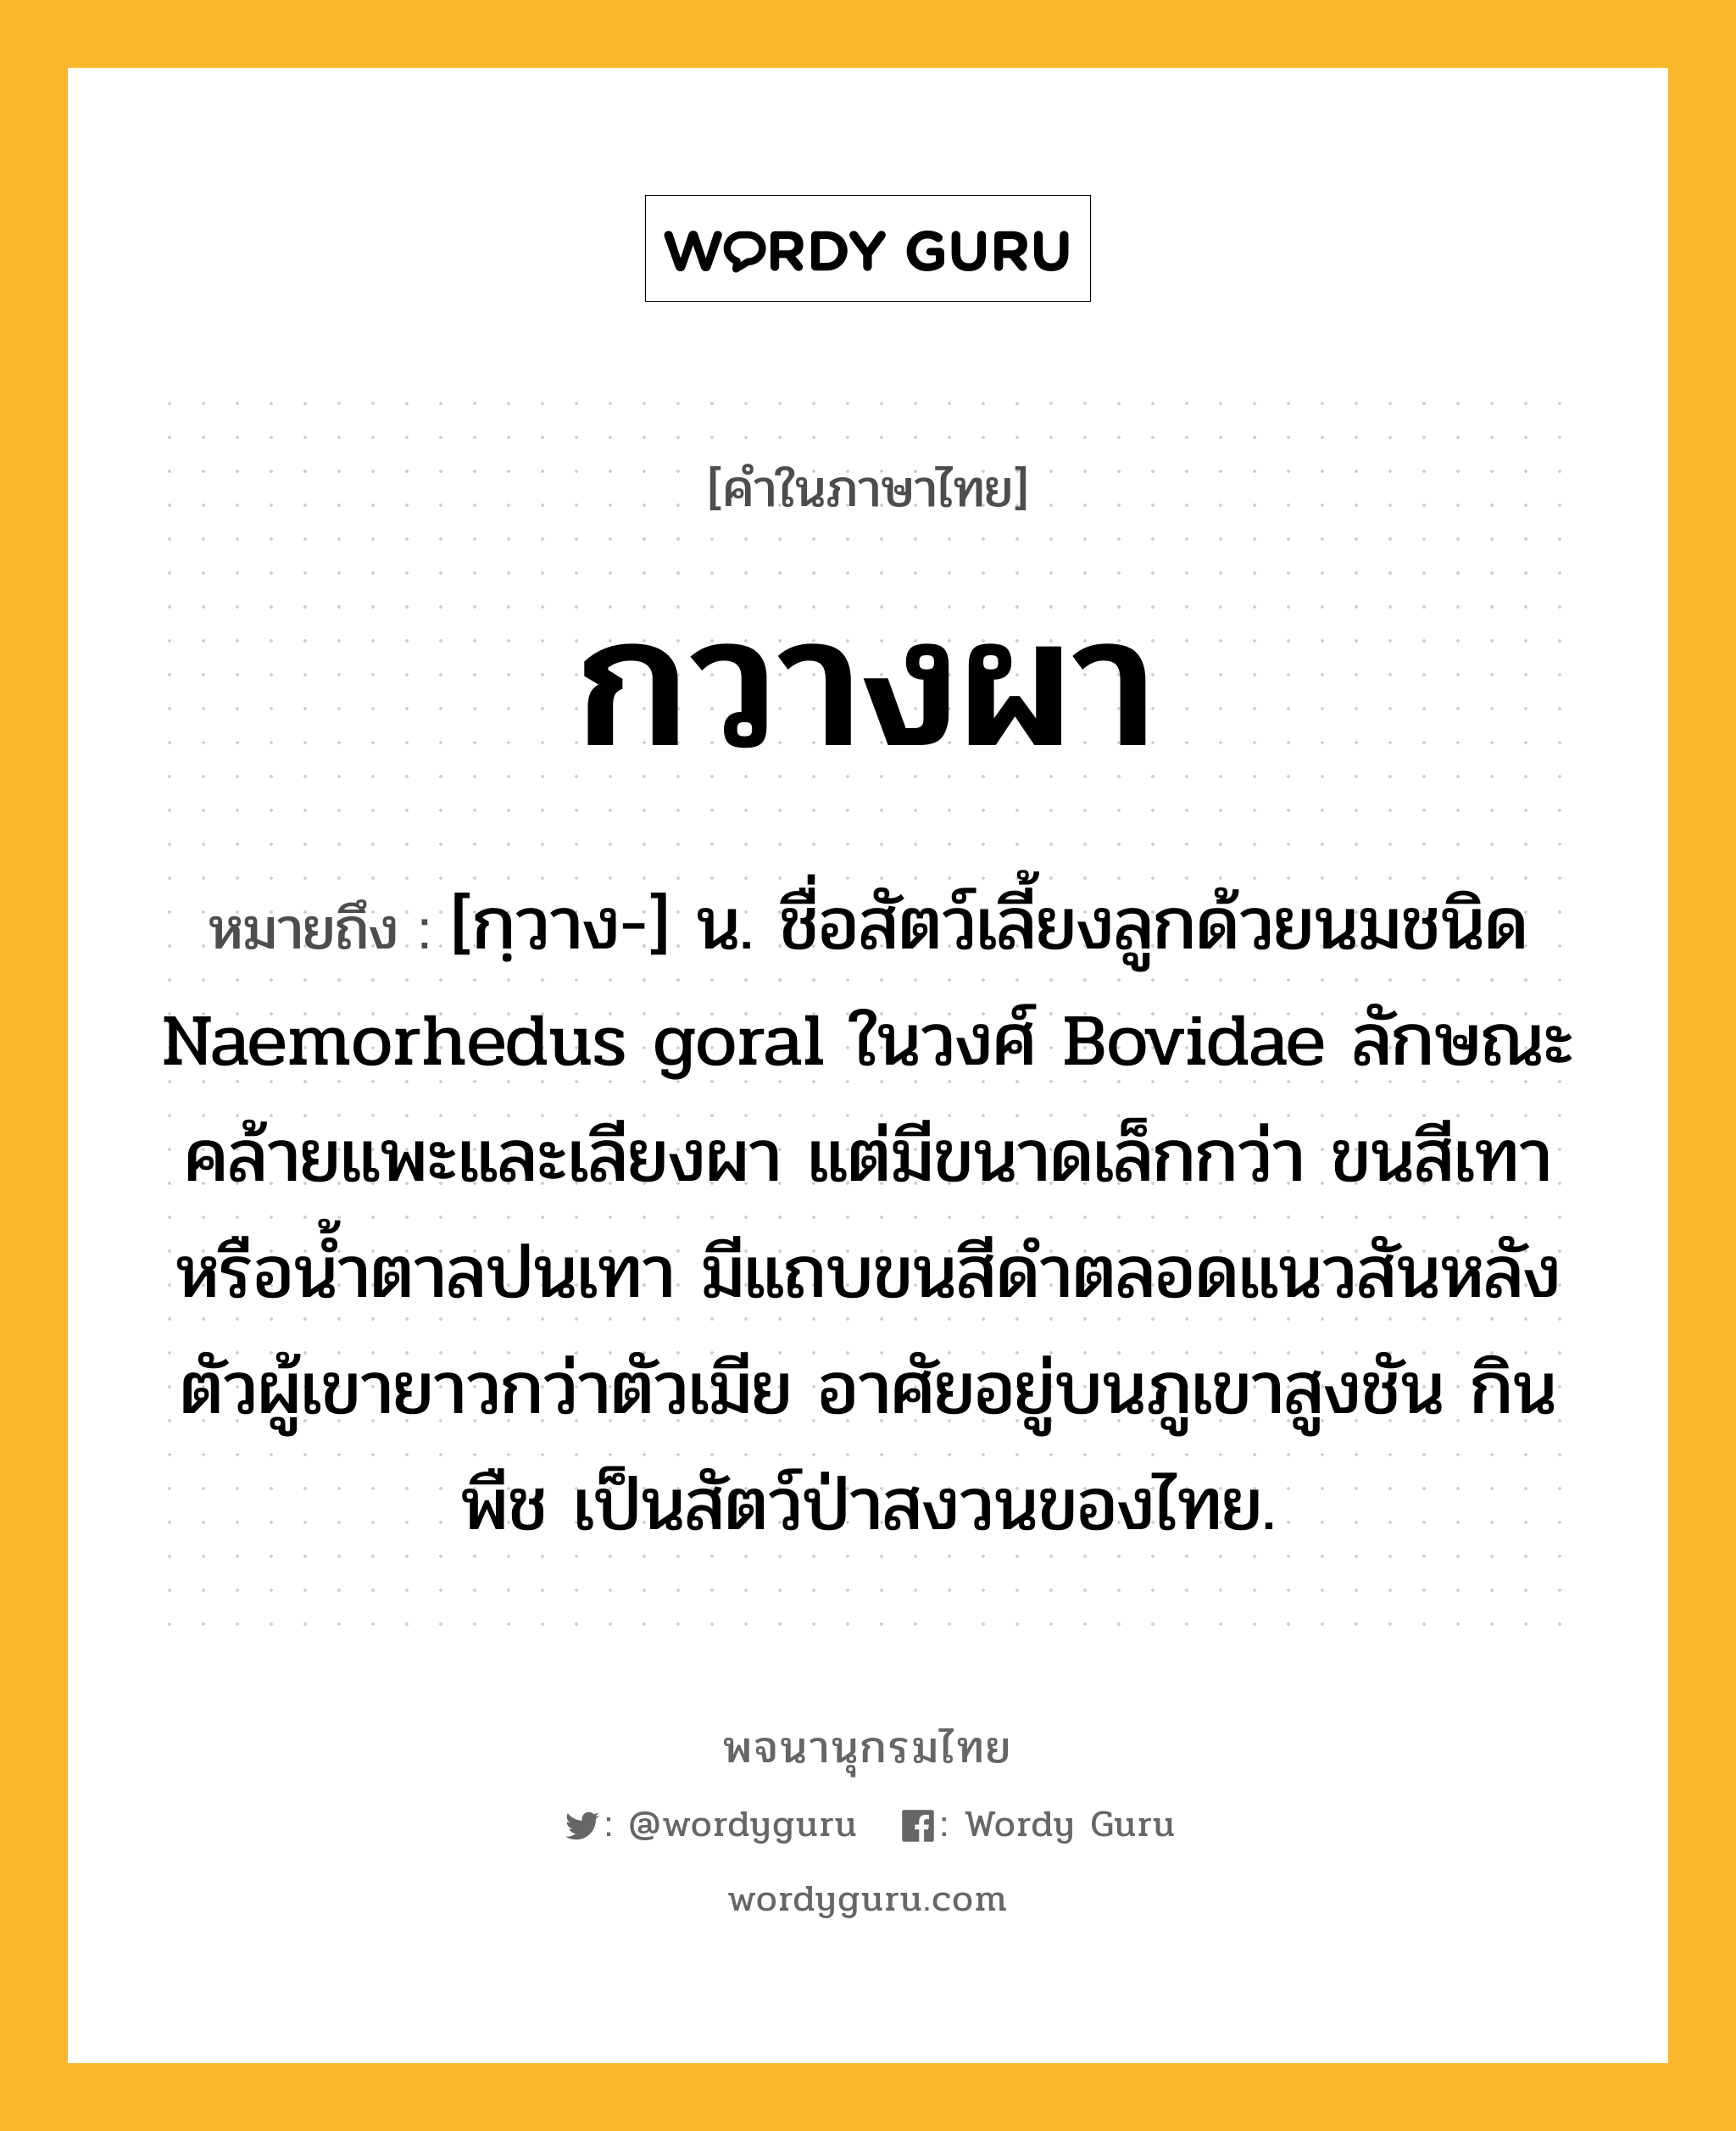 กวางผา ความหมาย หมายถึงอะไร?, คำในภาษาไทย กวางผา หมายถึง [กฺวาง-] น. ชื่อสัตว์เลี้ยงลูกด้วยนมชนิด Naemorhedus goral ในวงศ์ Bovidae ลักษณะคล้ายแพะและเลียงผา แต่มีขนาดเล็กกว่า ขนสีเทาหรือน้ำตาลปนเทา มีแถบขนสีดำตลอดแนวสันหลัง ตัวผู้เขายาวกว่าตัวเมีย อาศัยอยู่บนภูเขาสูงชัน กินพืช เป็นสัตว์ป่าสงวนของไทย.